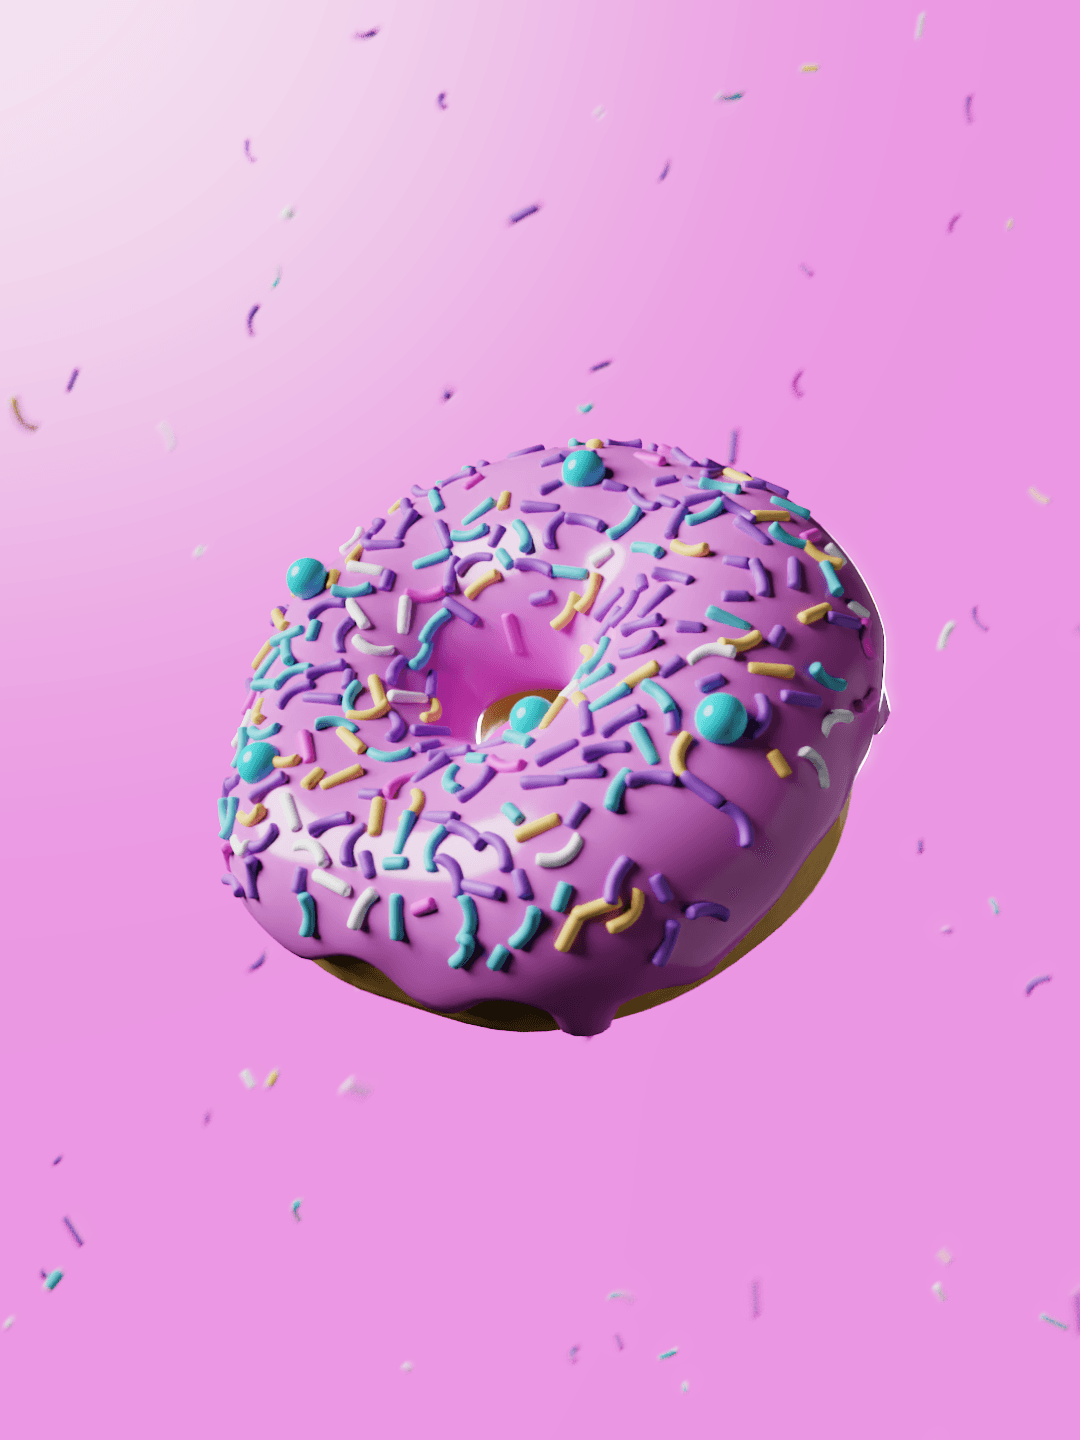 Donut 3d model